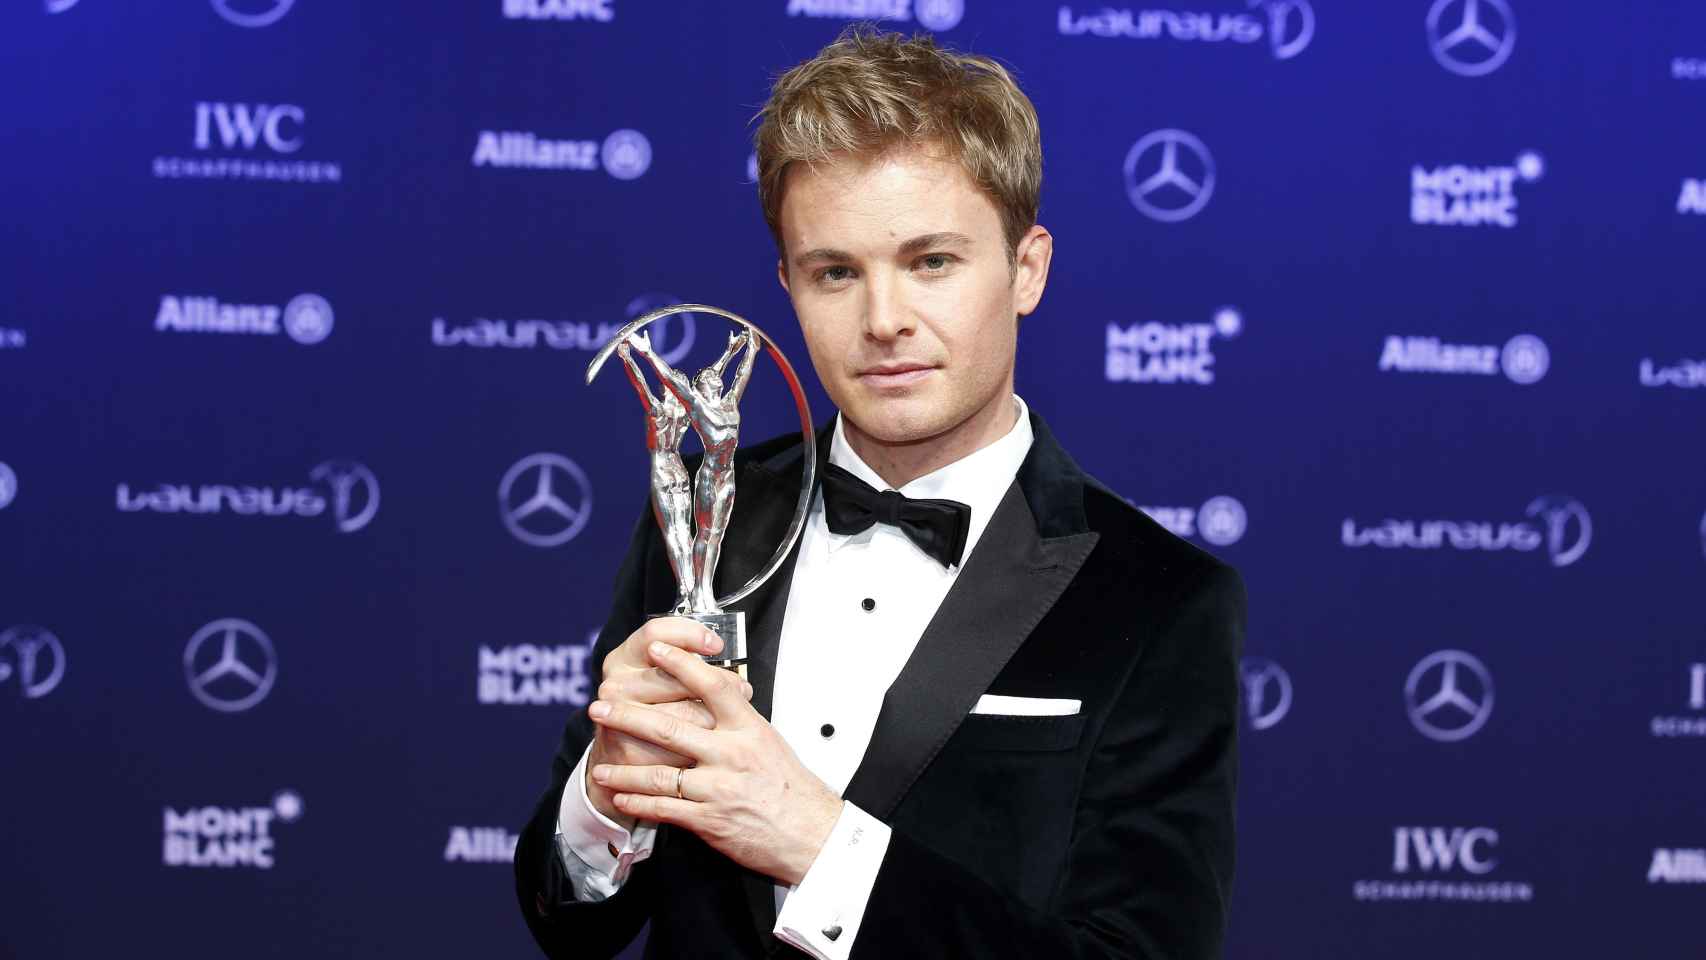 El piloto alemán de Fórmula 1 Nico Rosberg recibió el premio a deportista revelación de la temporada